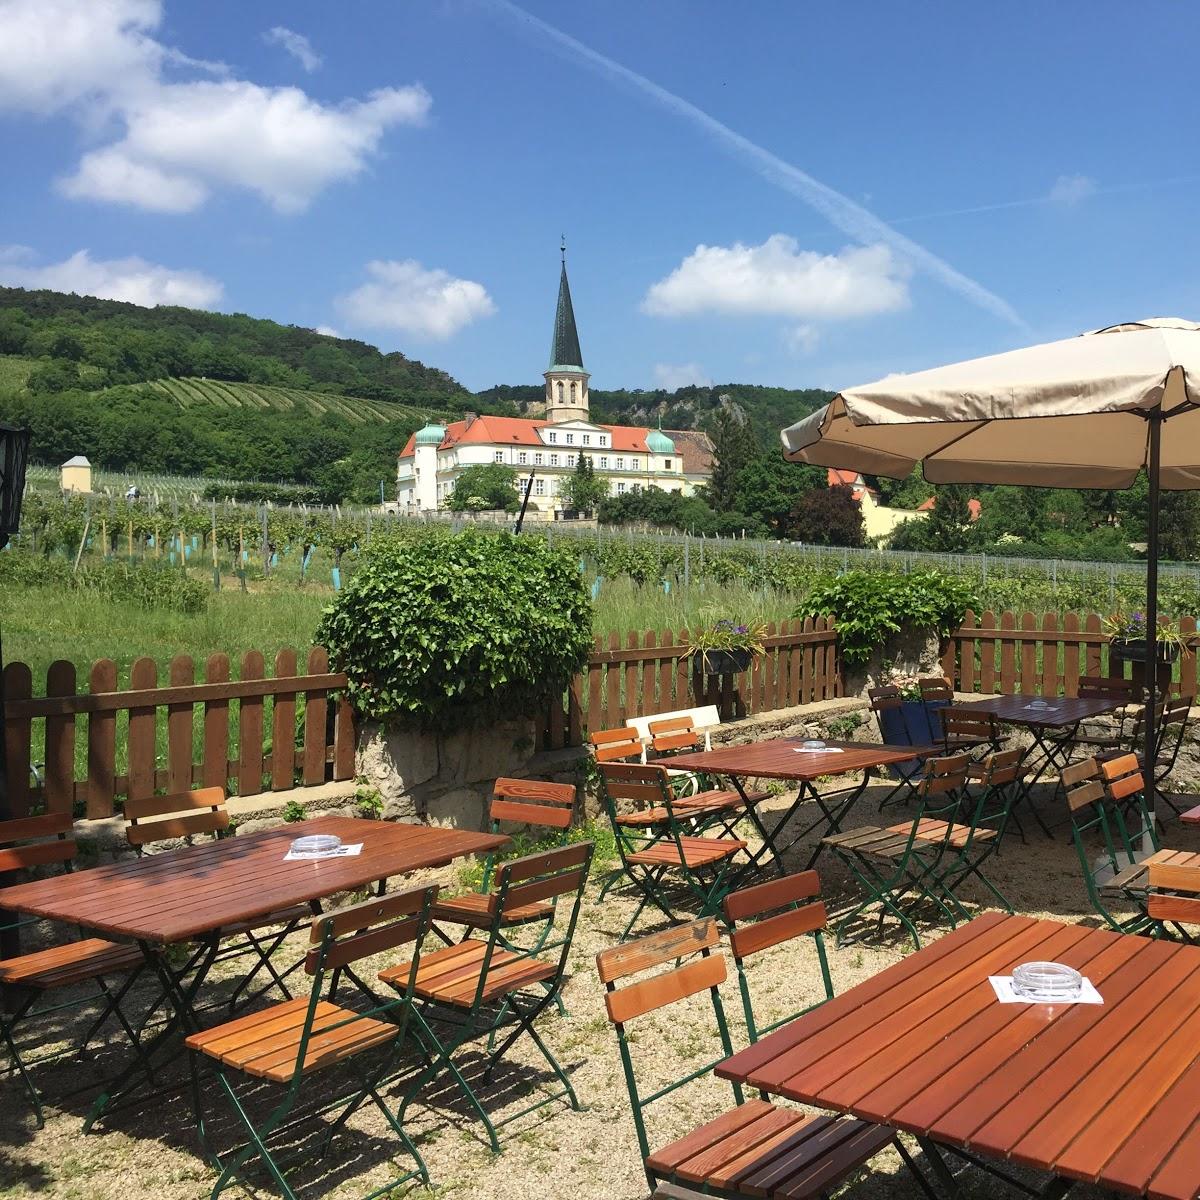 Restaurant "Weinbau Straitz & Straitz" in Gumpoldskirchen